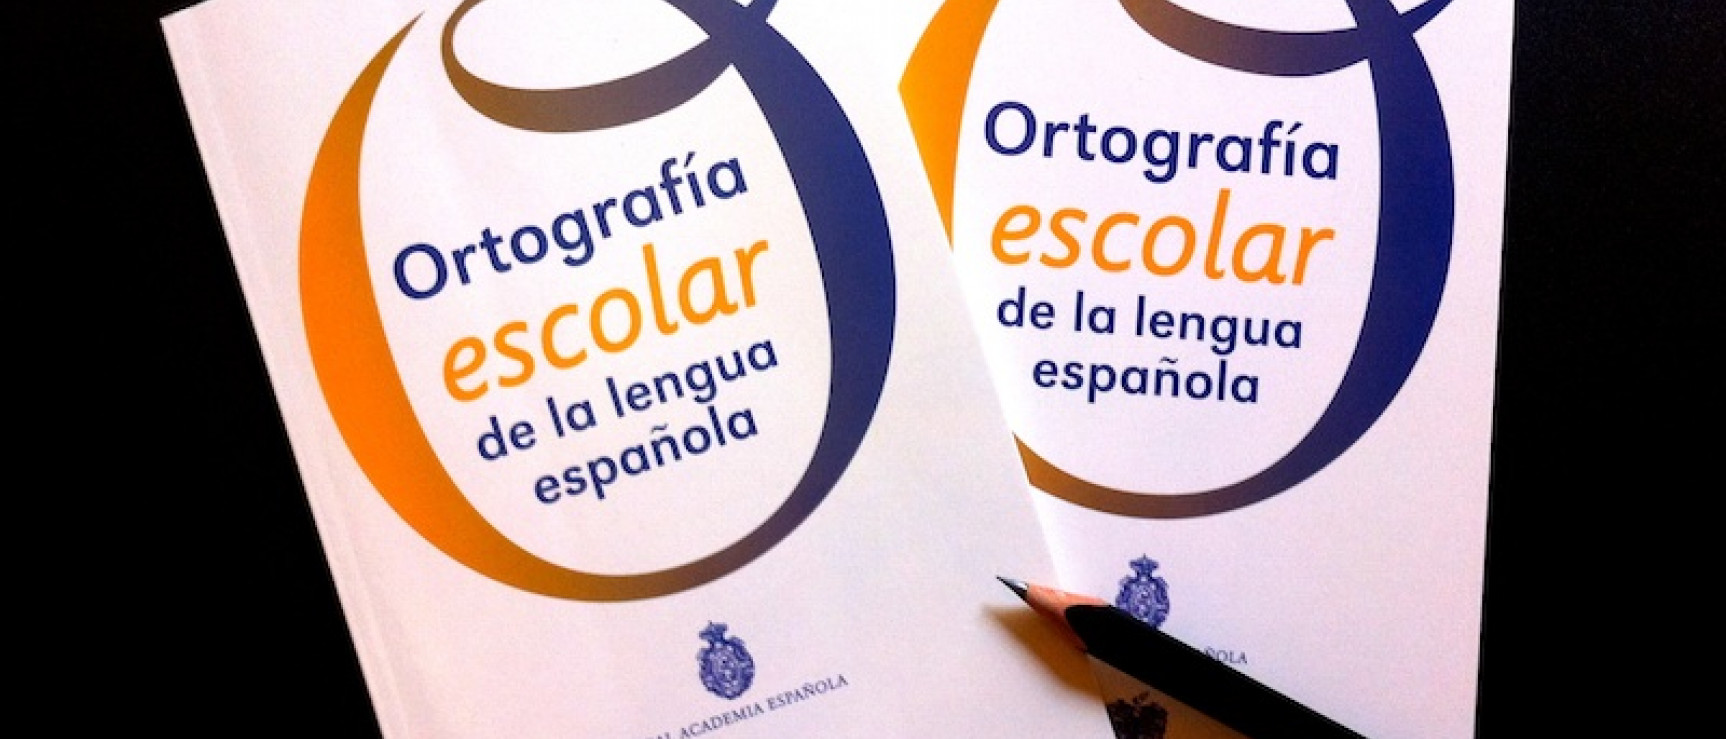 Edición escolar de la «Ortografía», publicada en 2013.